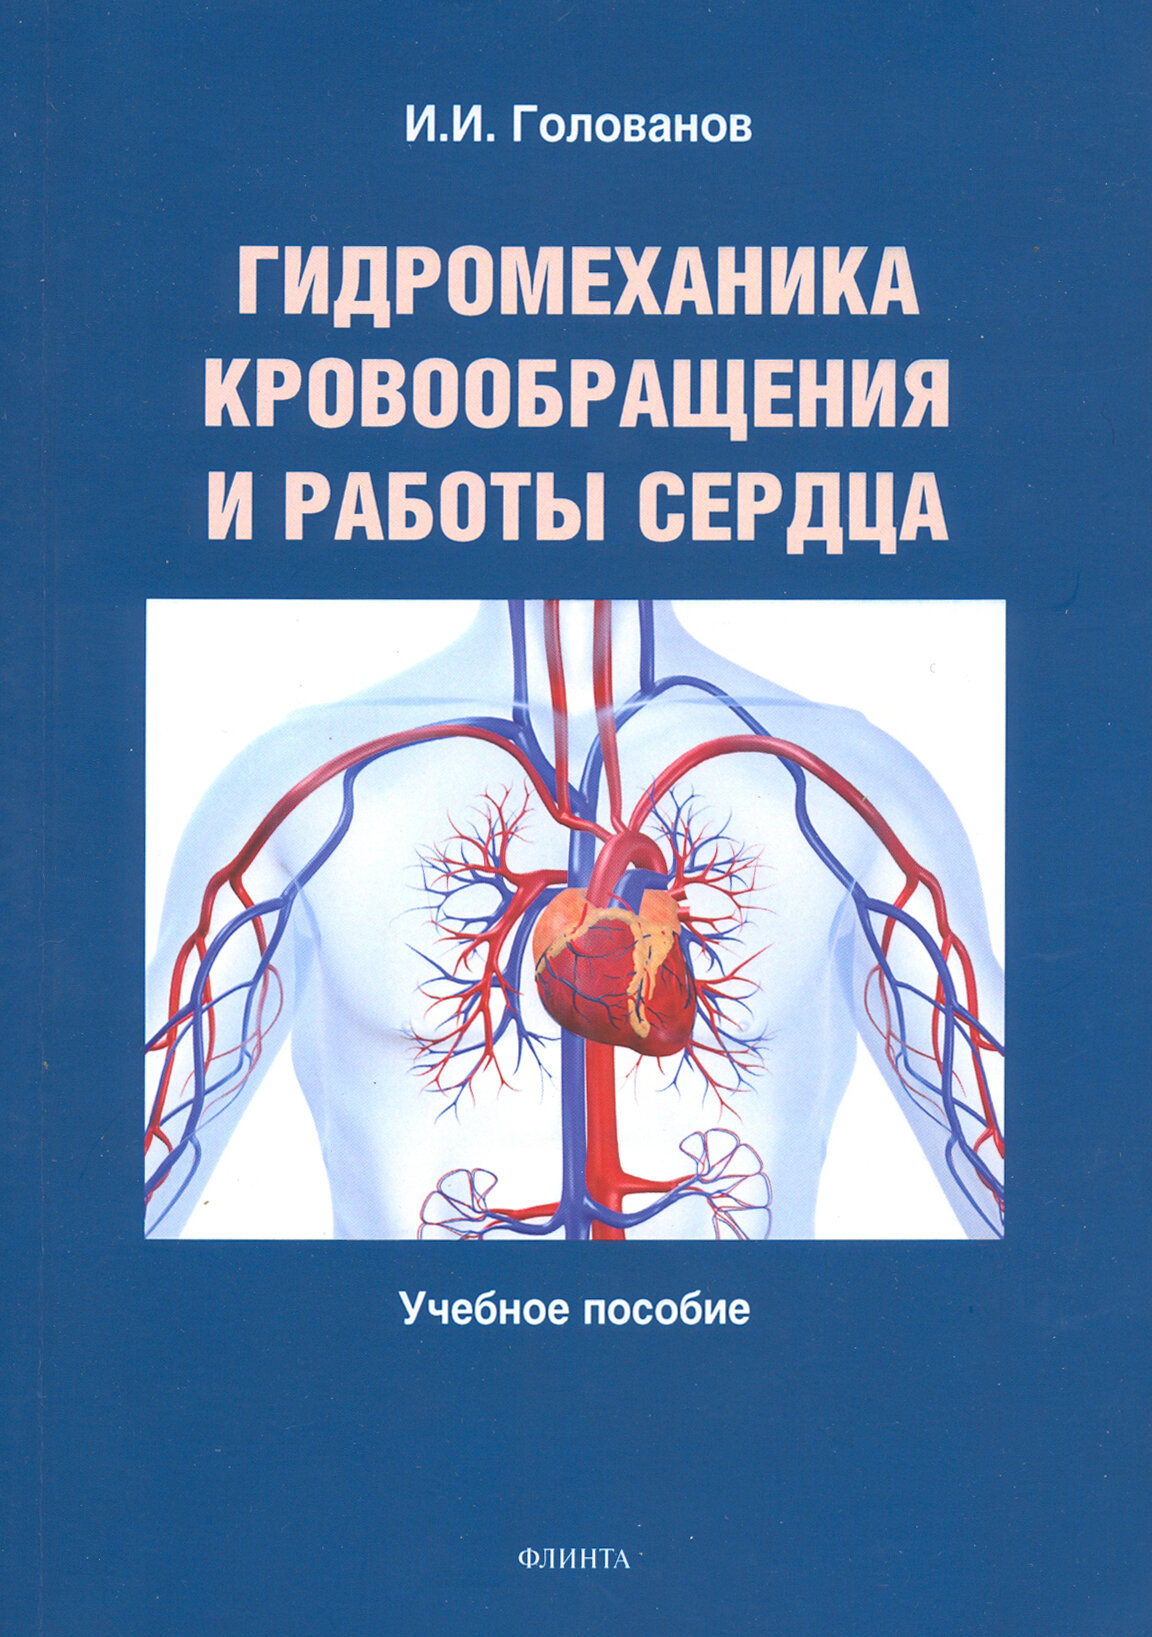 Гидромеханика кровообращения и работы сердца - фото №2